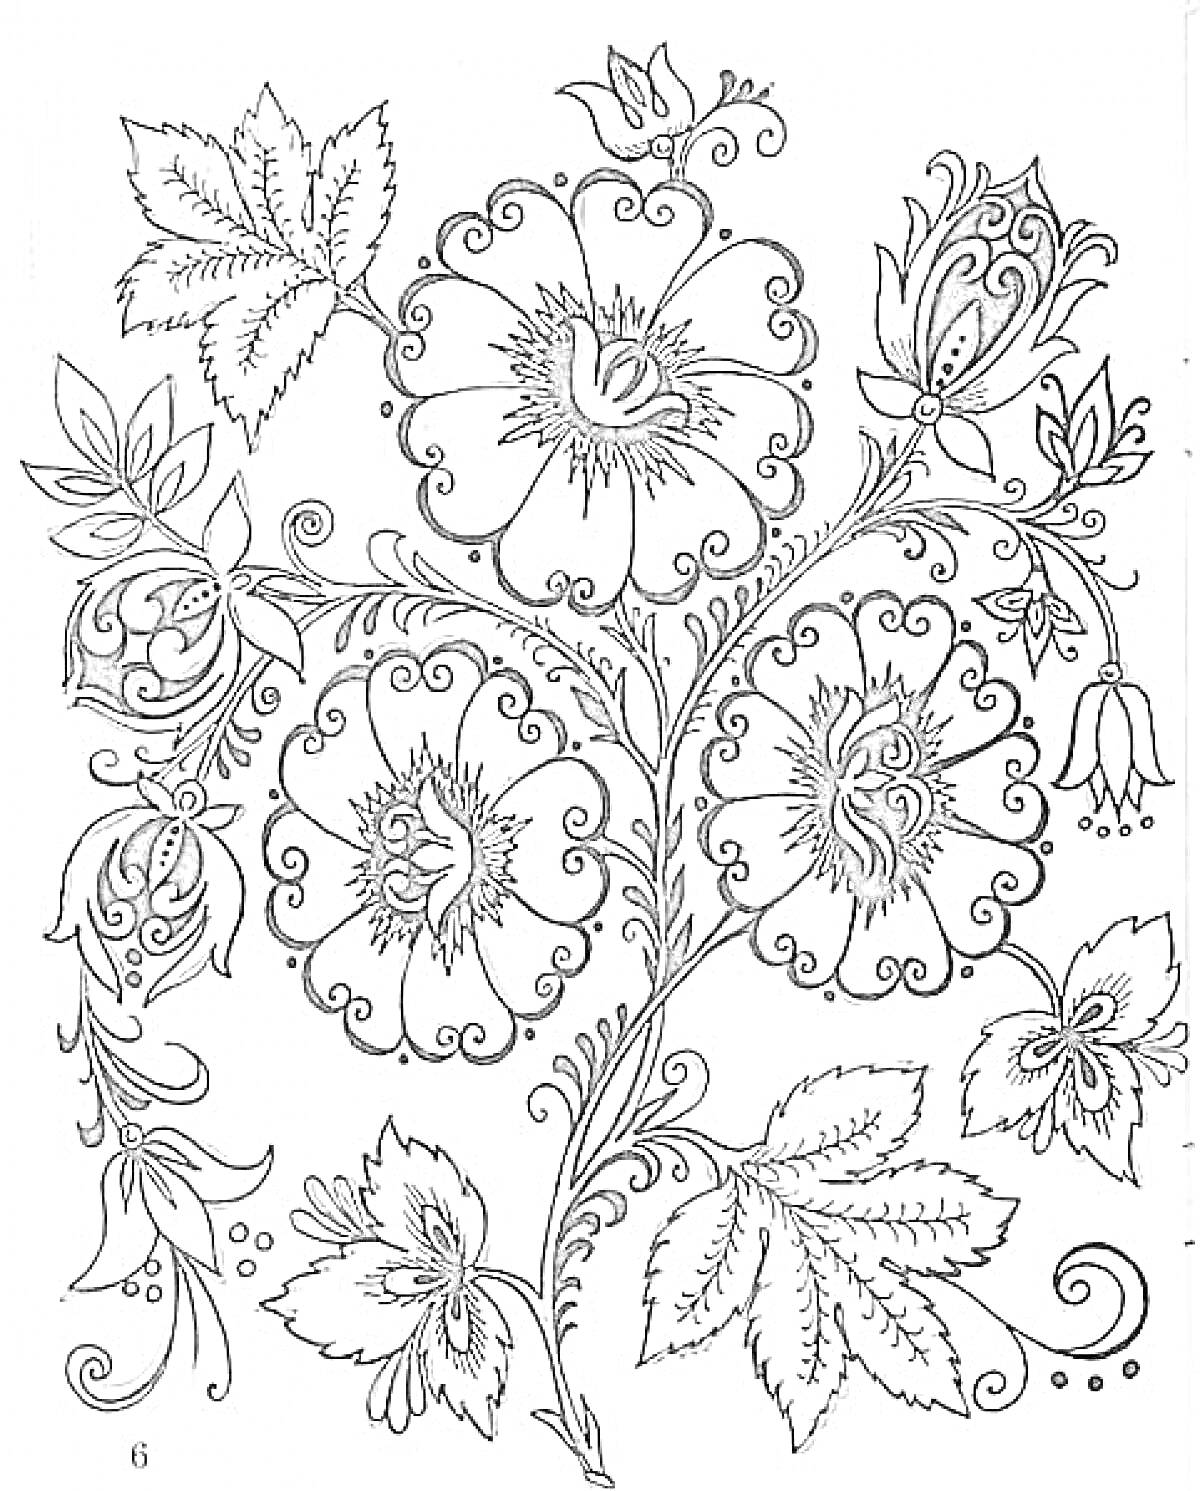 Раскраска Цветочные узоры Хохломы с пятью крупными цветками, листьями и завитками